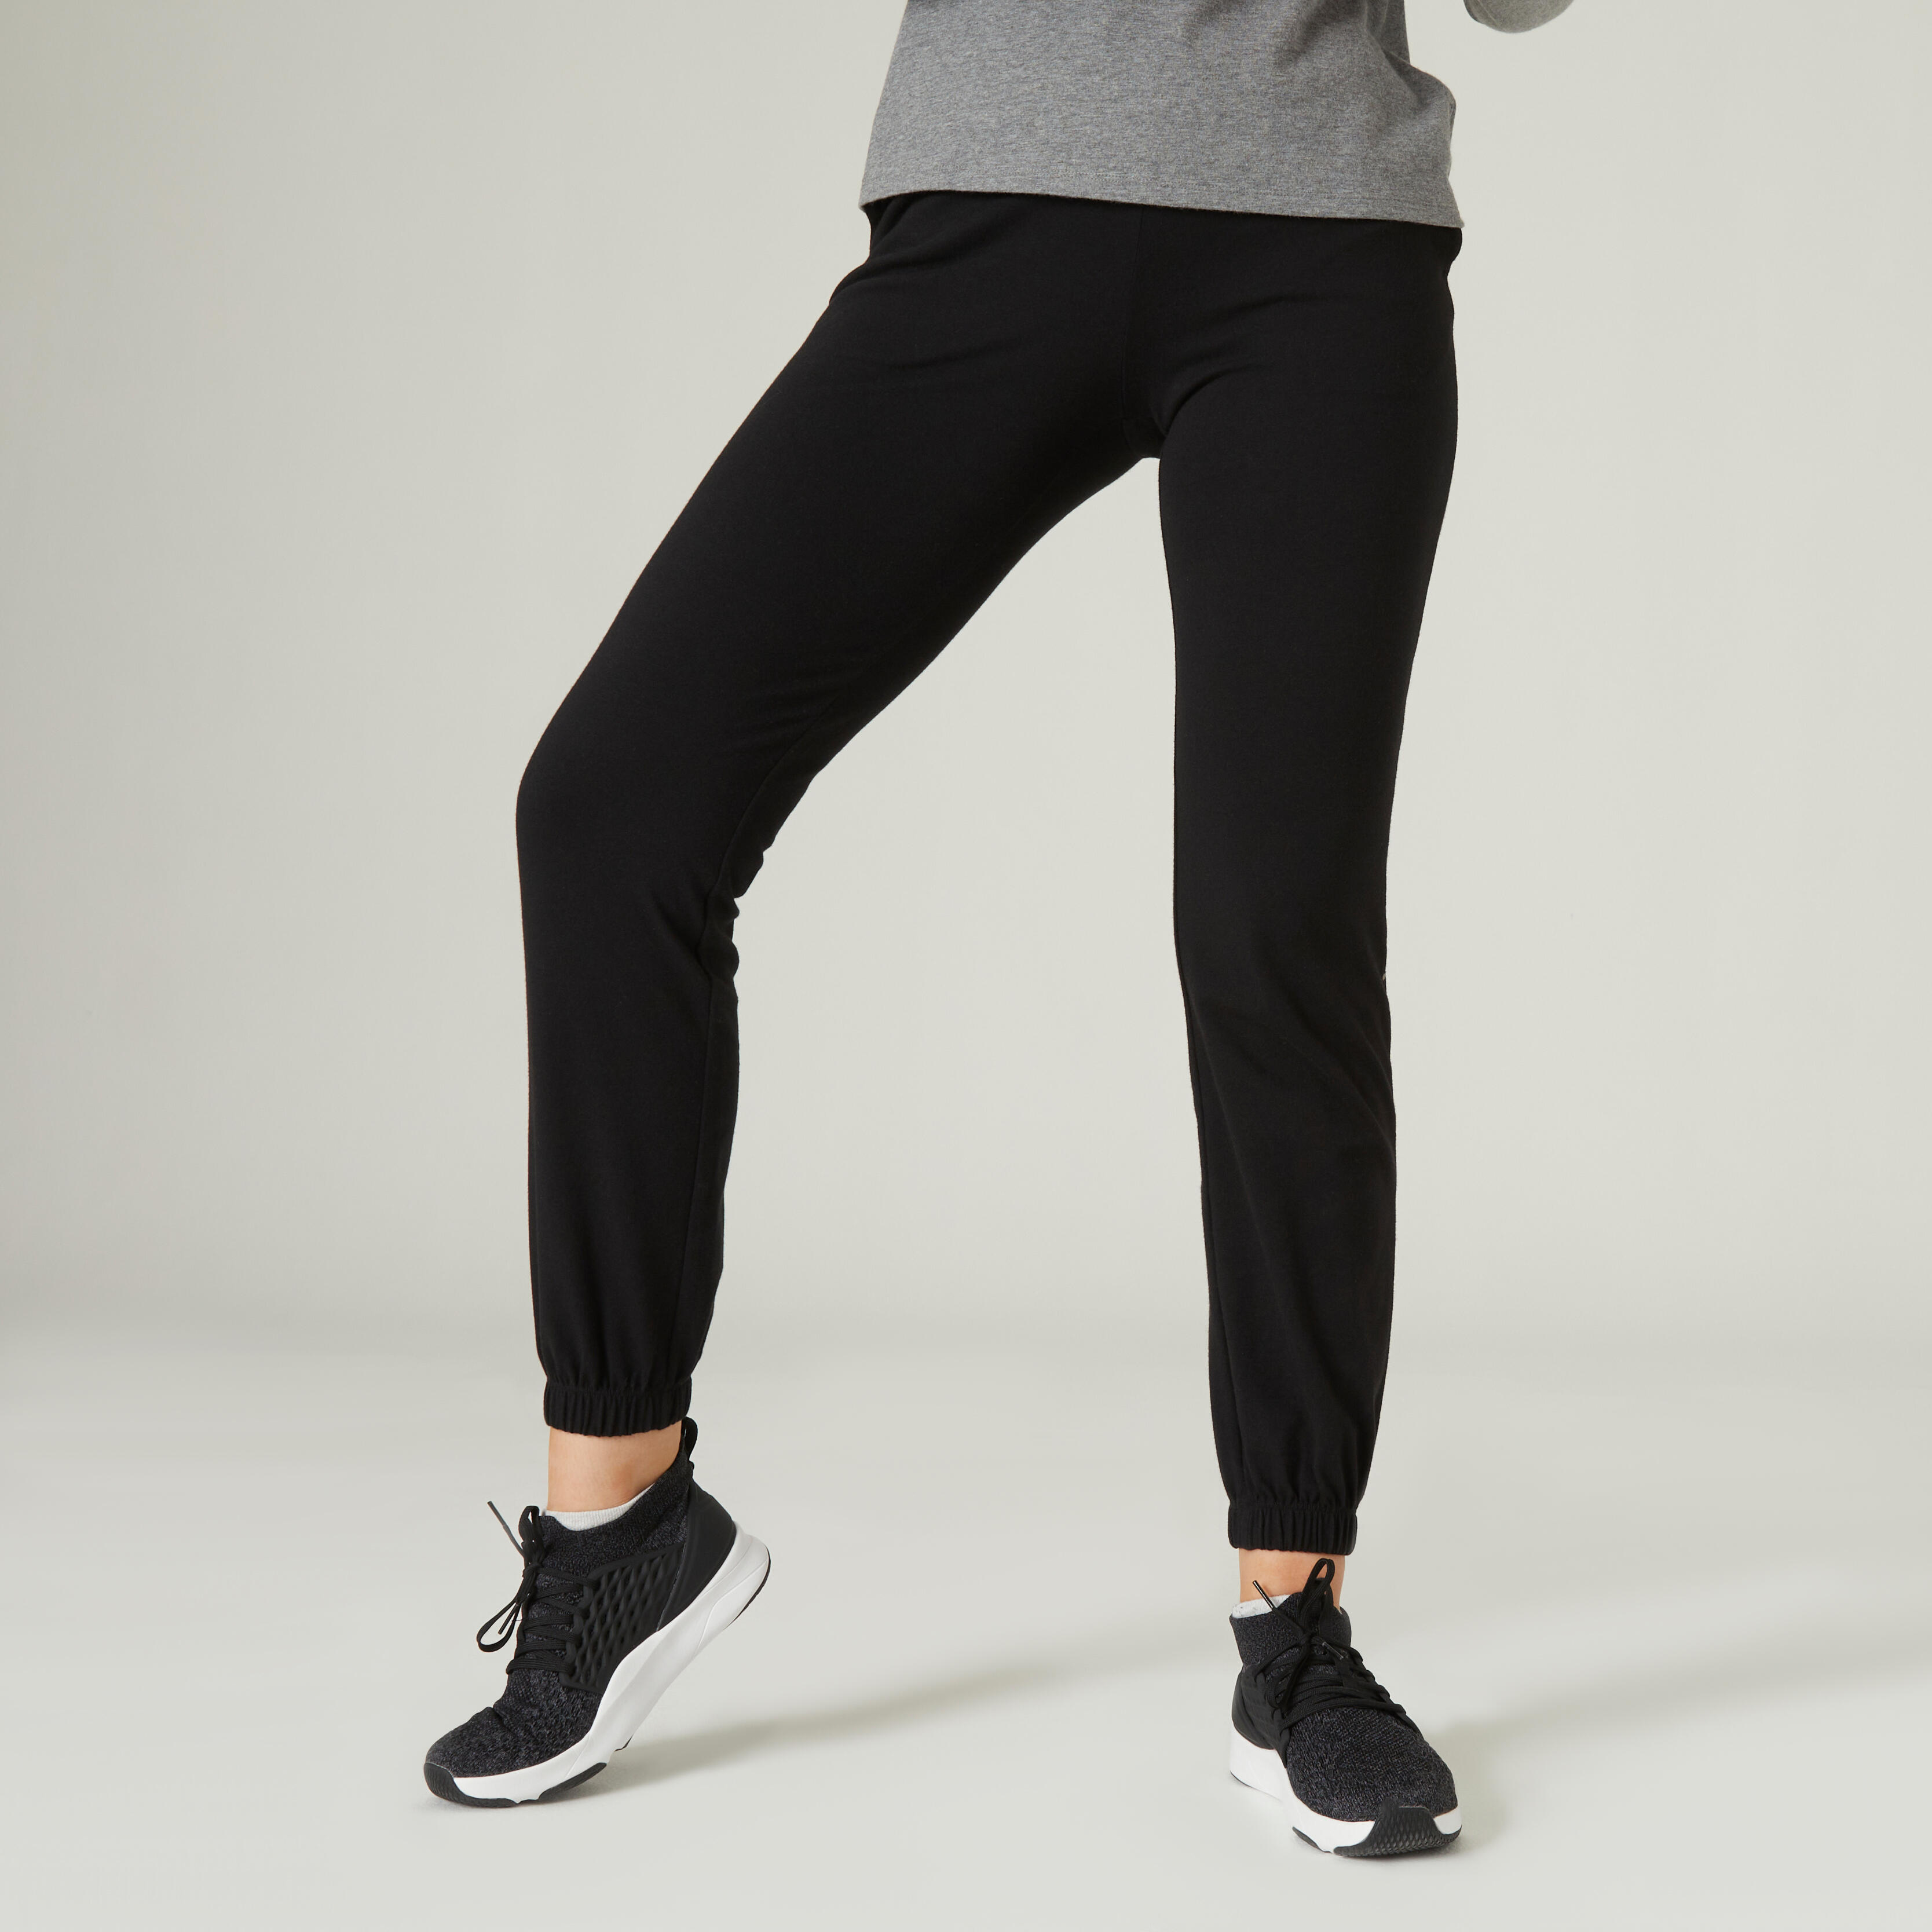 und Jogginghosen und Fitnesskleidung Trainings AG Jeans Baumwolle Trainingshose Aus Baumwolle in Weiß Damen Bekleidung Sport- Training 